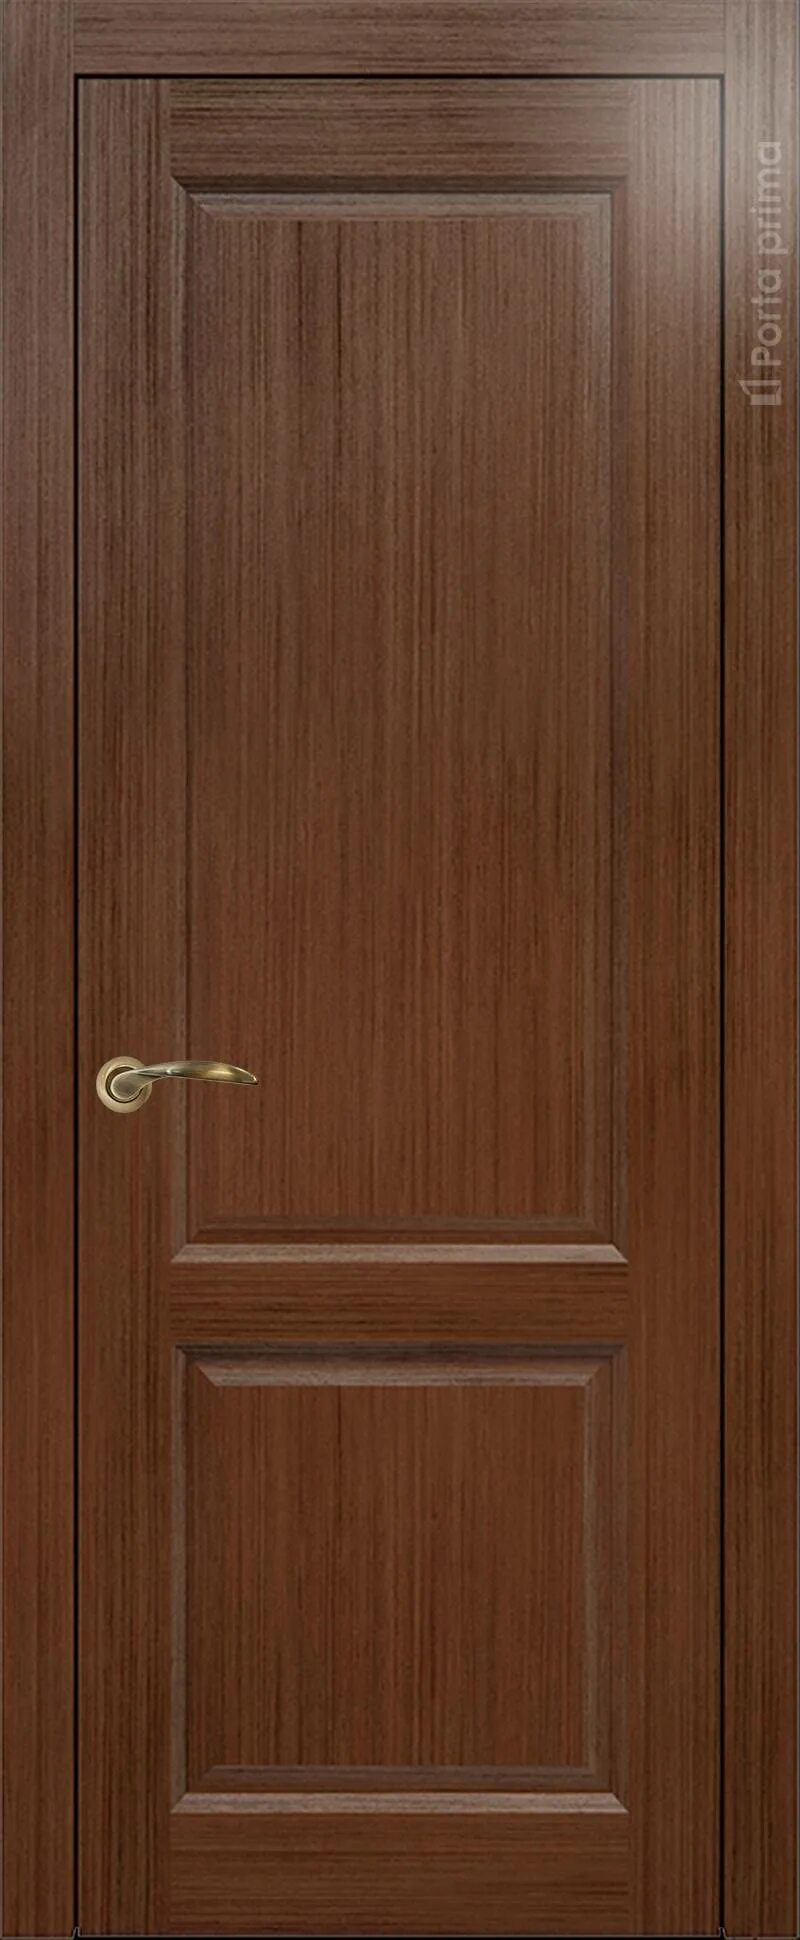 Порте прима межкомнатные. Дверь Сиена порта Прима. Межкомнатная дверь Imperia-r цвет - венге классика. Эстет дуб Торонто.